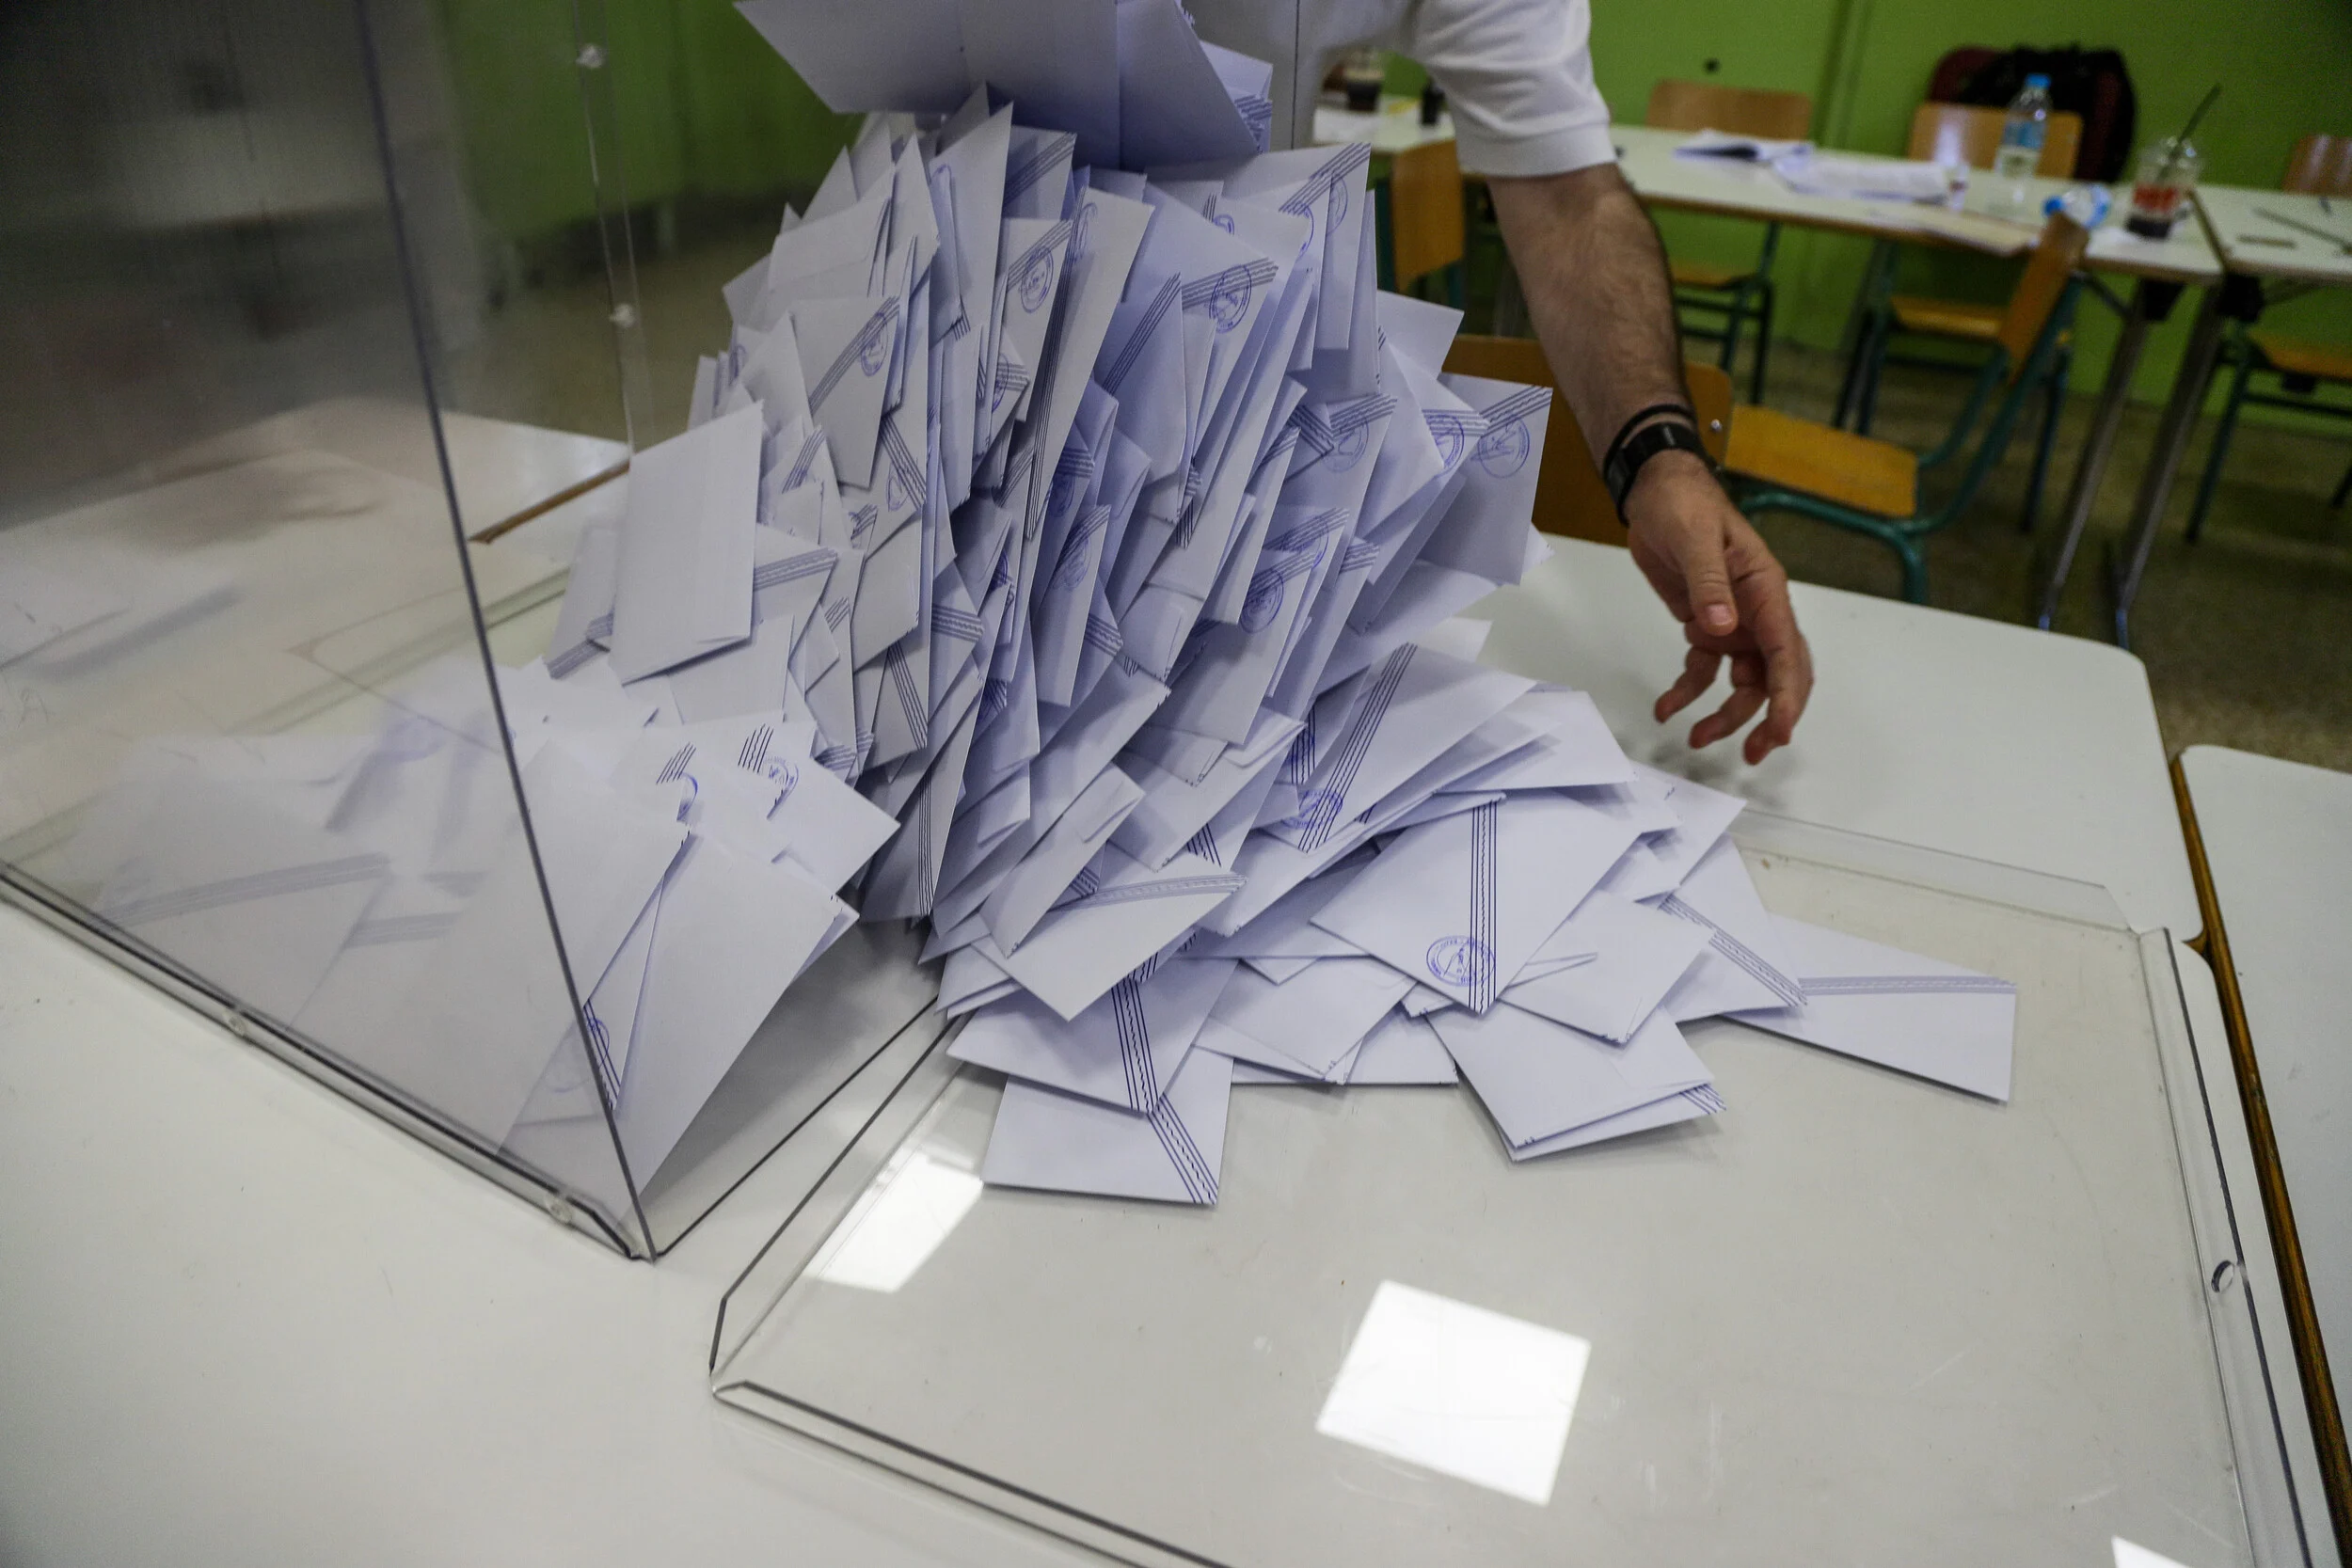 Σήμερα στις 20:00 ο Άρειος Πάγος θα ανακοινώσει τα κόμματα των εκλογών – Άγνωστο τι θα γίνει με Η.Κασιδιάρη